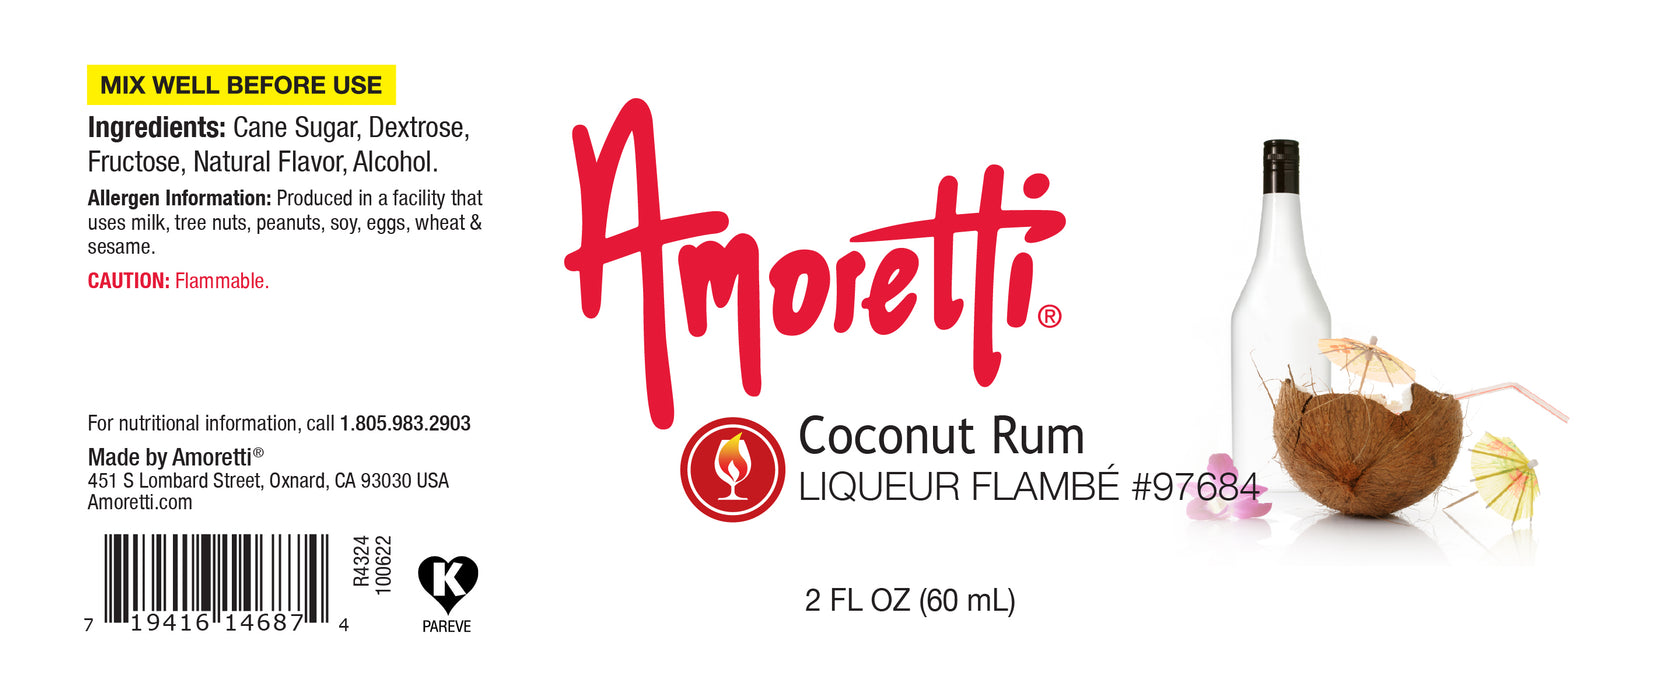 Coconut Rum Liqueur Flambe